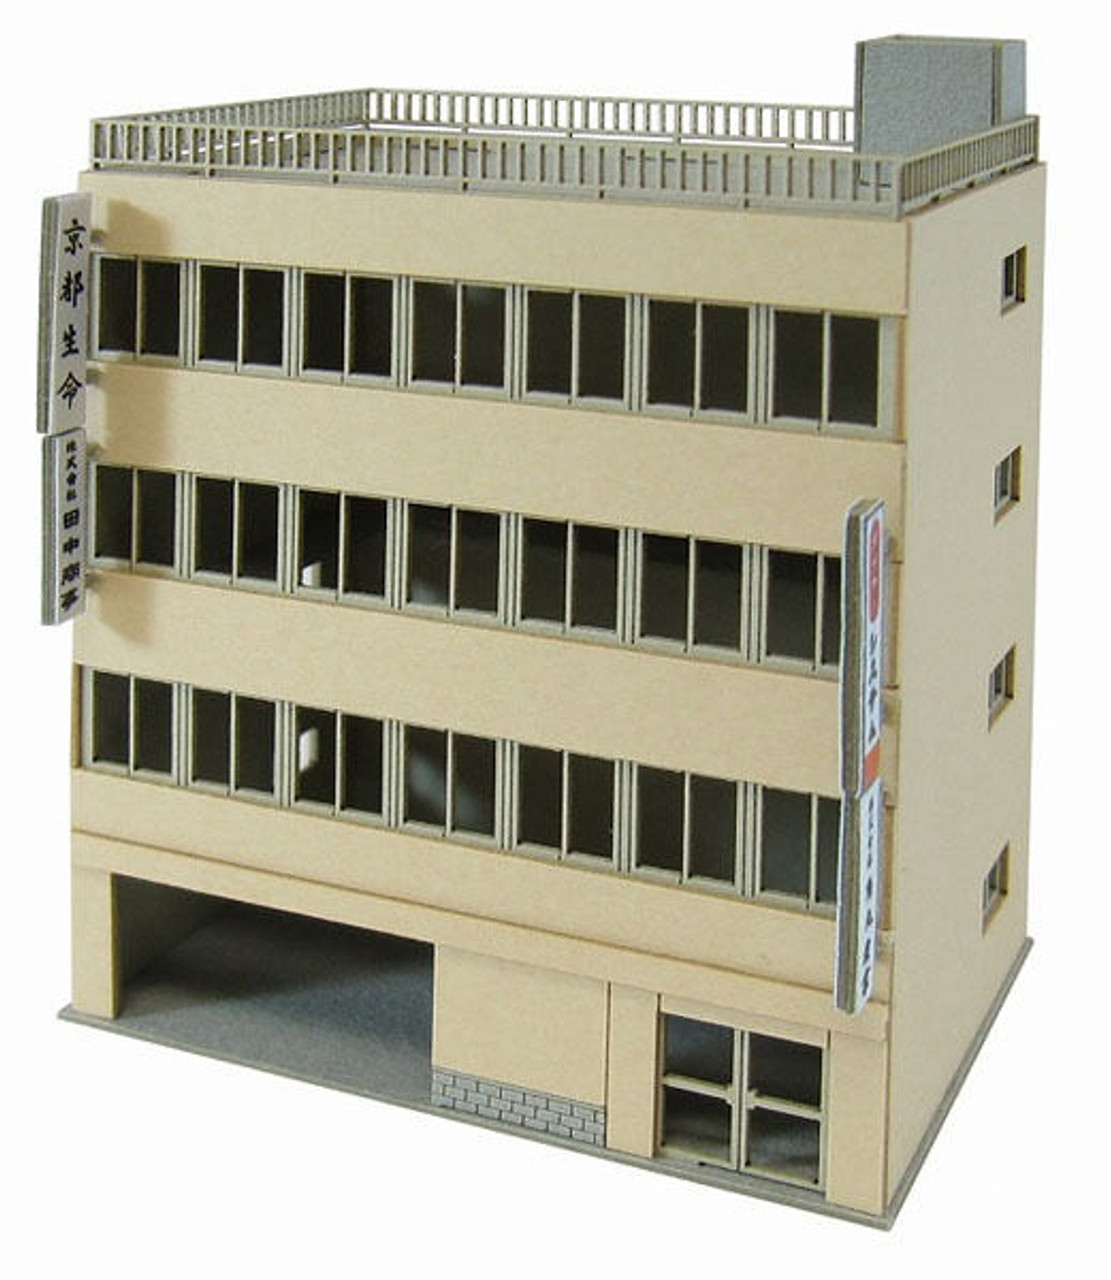 Sankei MP01-98 Building C 1/220 Z Scale Paper Kits